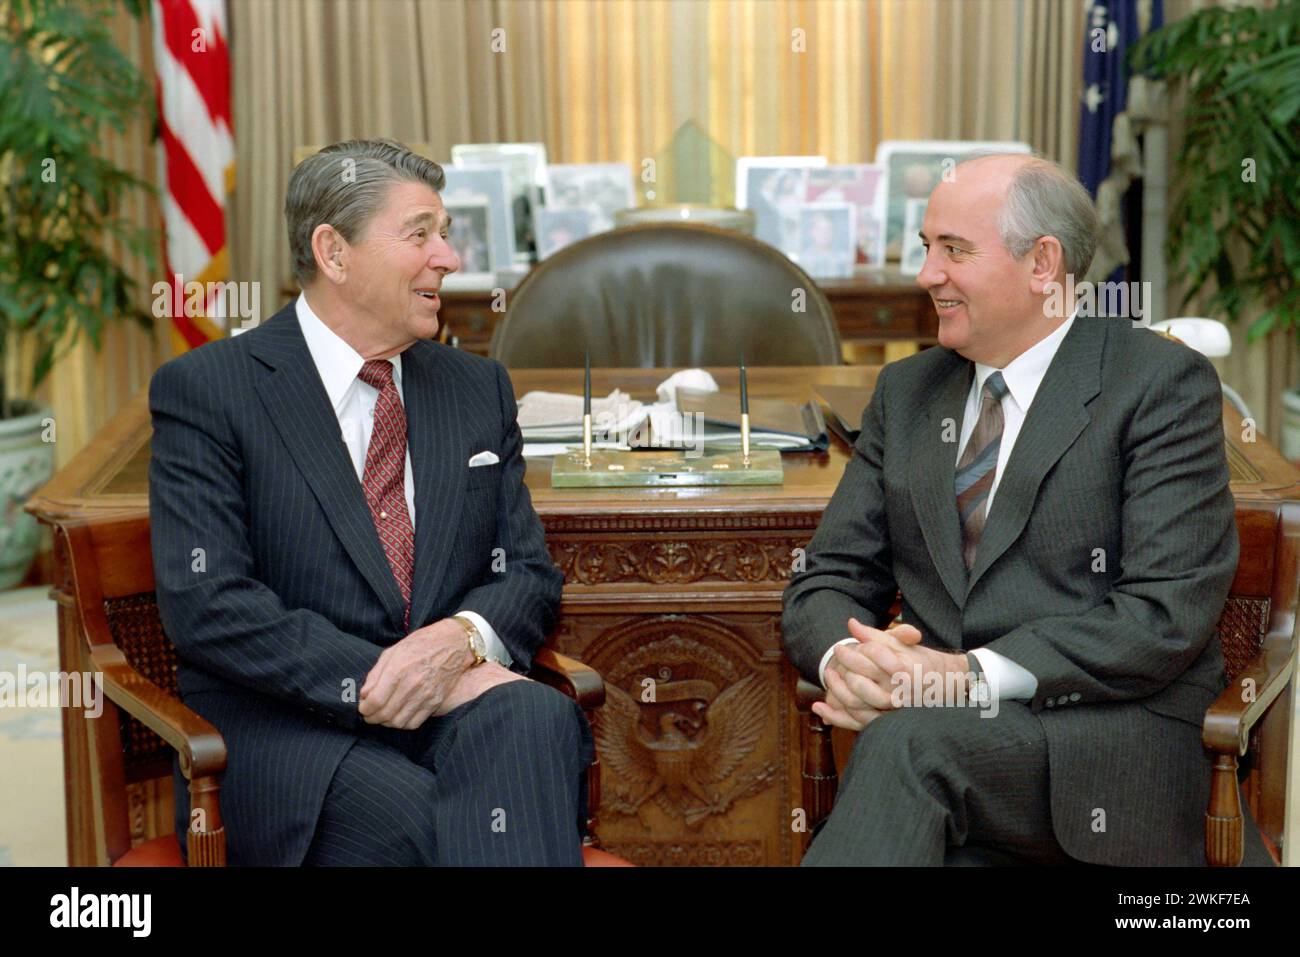 Michail Gorbatschow und Ronald Reagan. Porträt des ehemaligen Präsidenten der Sowjetunion, Michail Sergejewitsch Gorbatschow (1931–2022) und des US-Präsidenten Ronald Reagan (1911–2004) im Weißen Haus, 1987 Stockfoto